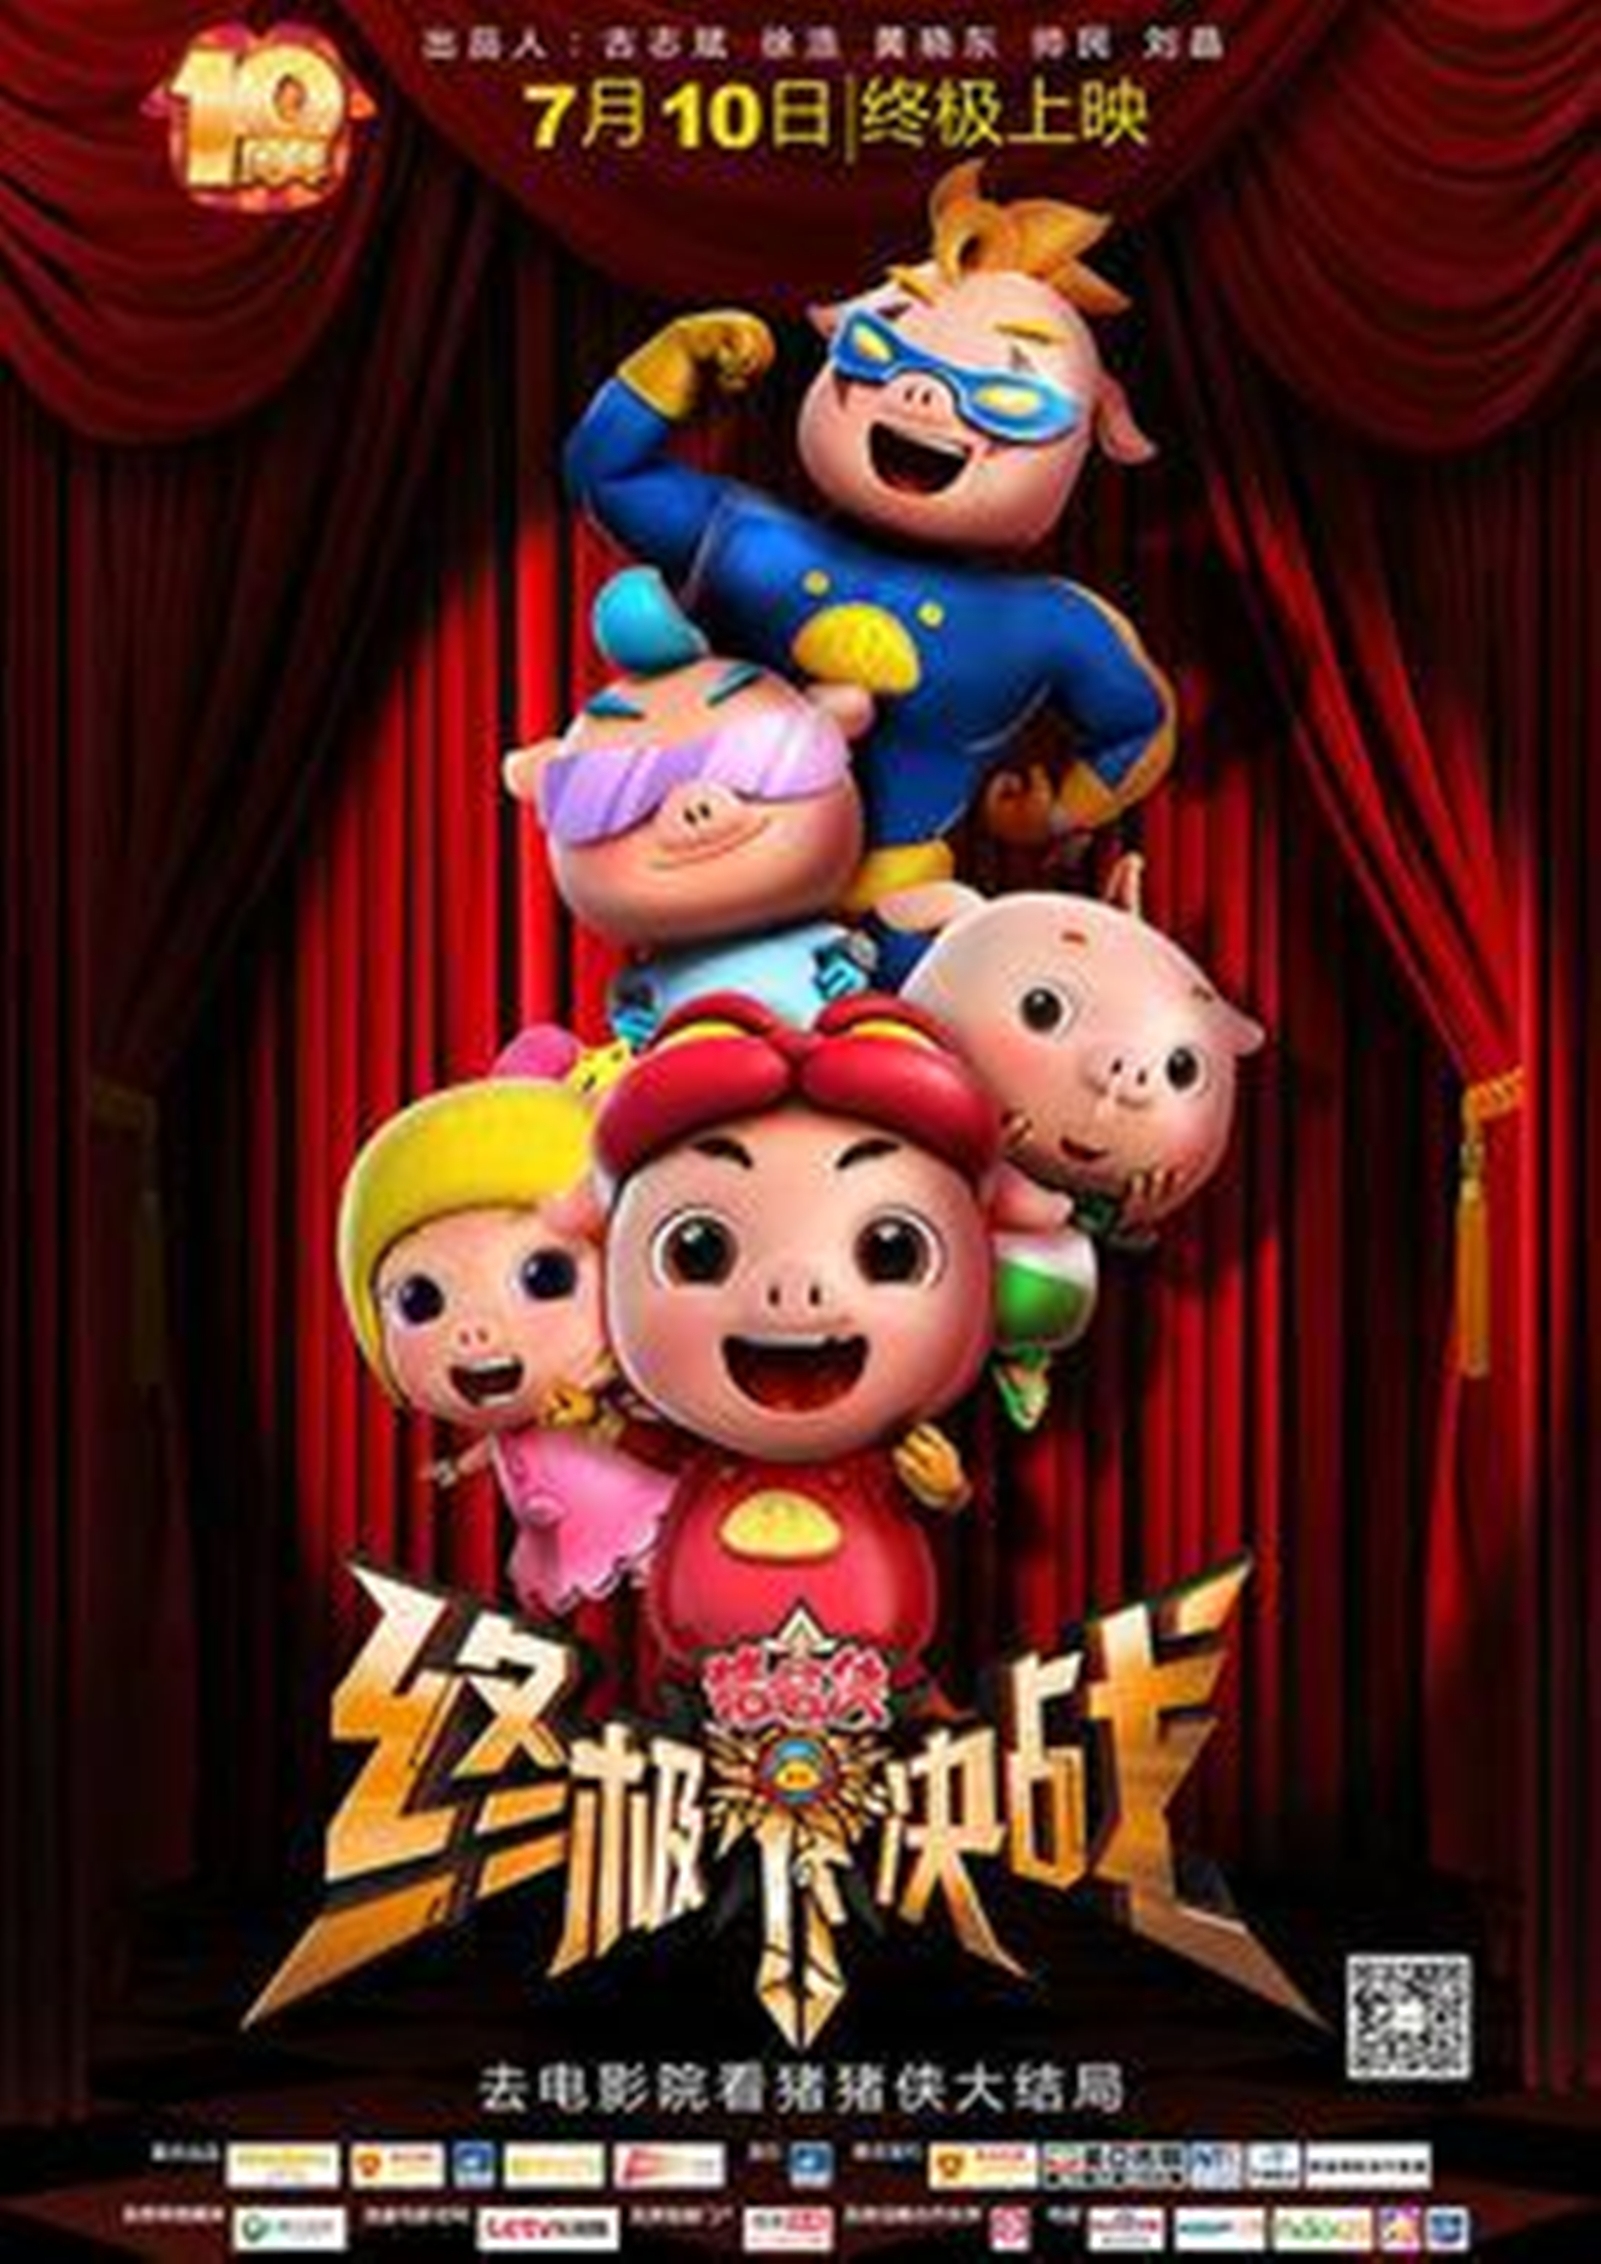 电影《猪猪侠》全新角色登场 制作全面升级_娱乐频道_中国青年网